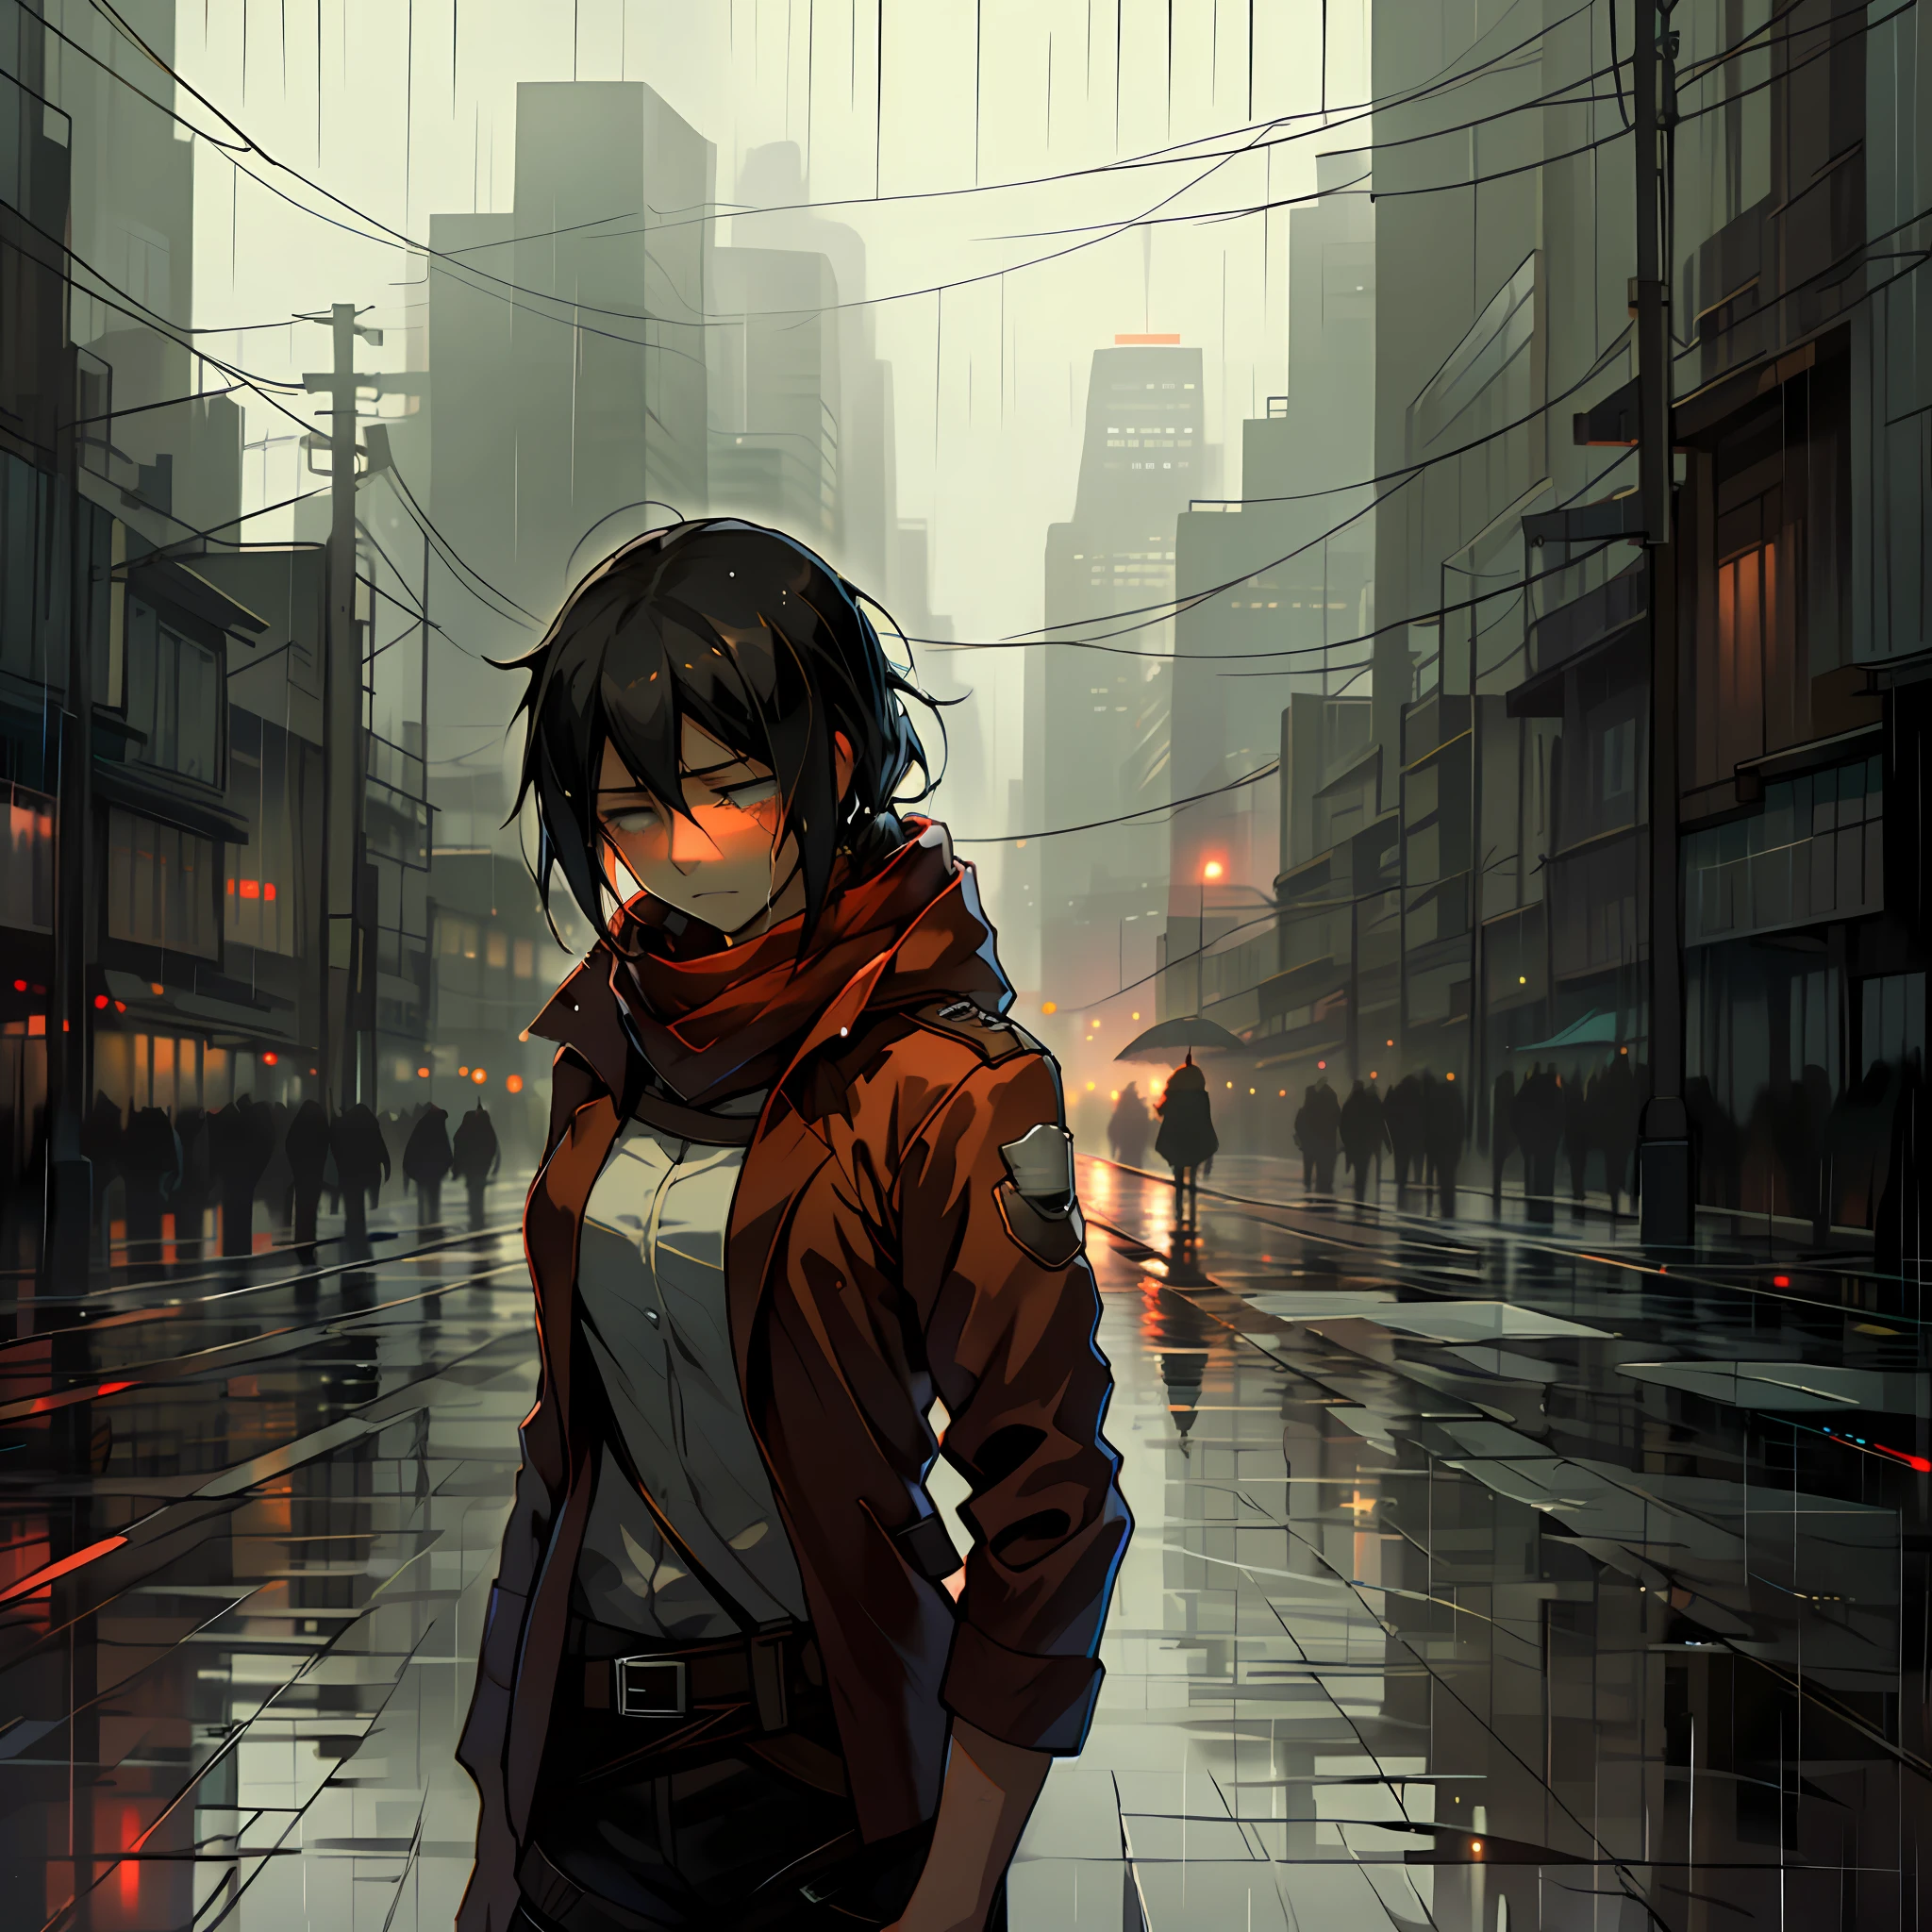 Frau weint , traurig, regnerisches Wetter, Reflexion der Lichter der Stadt, die von den nassen Teilen reflektiert werden, mikasa